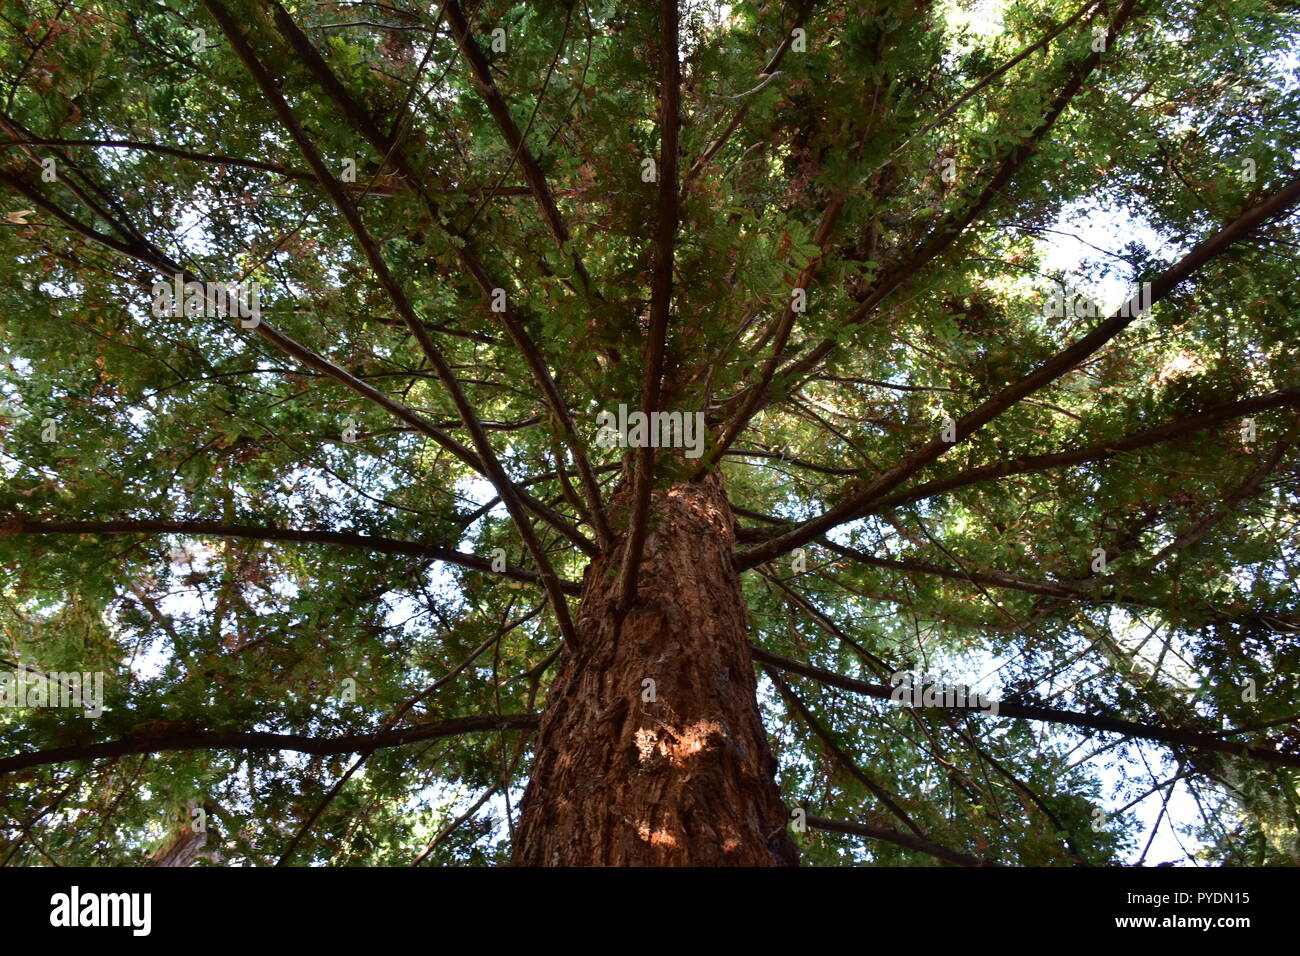 Gigantic sequoia tree Stock Photo